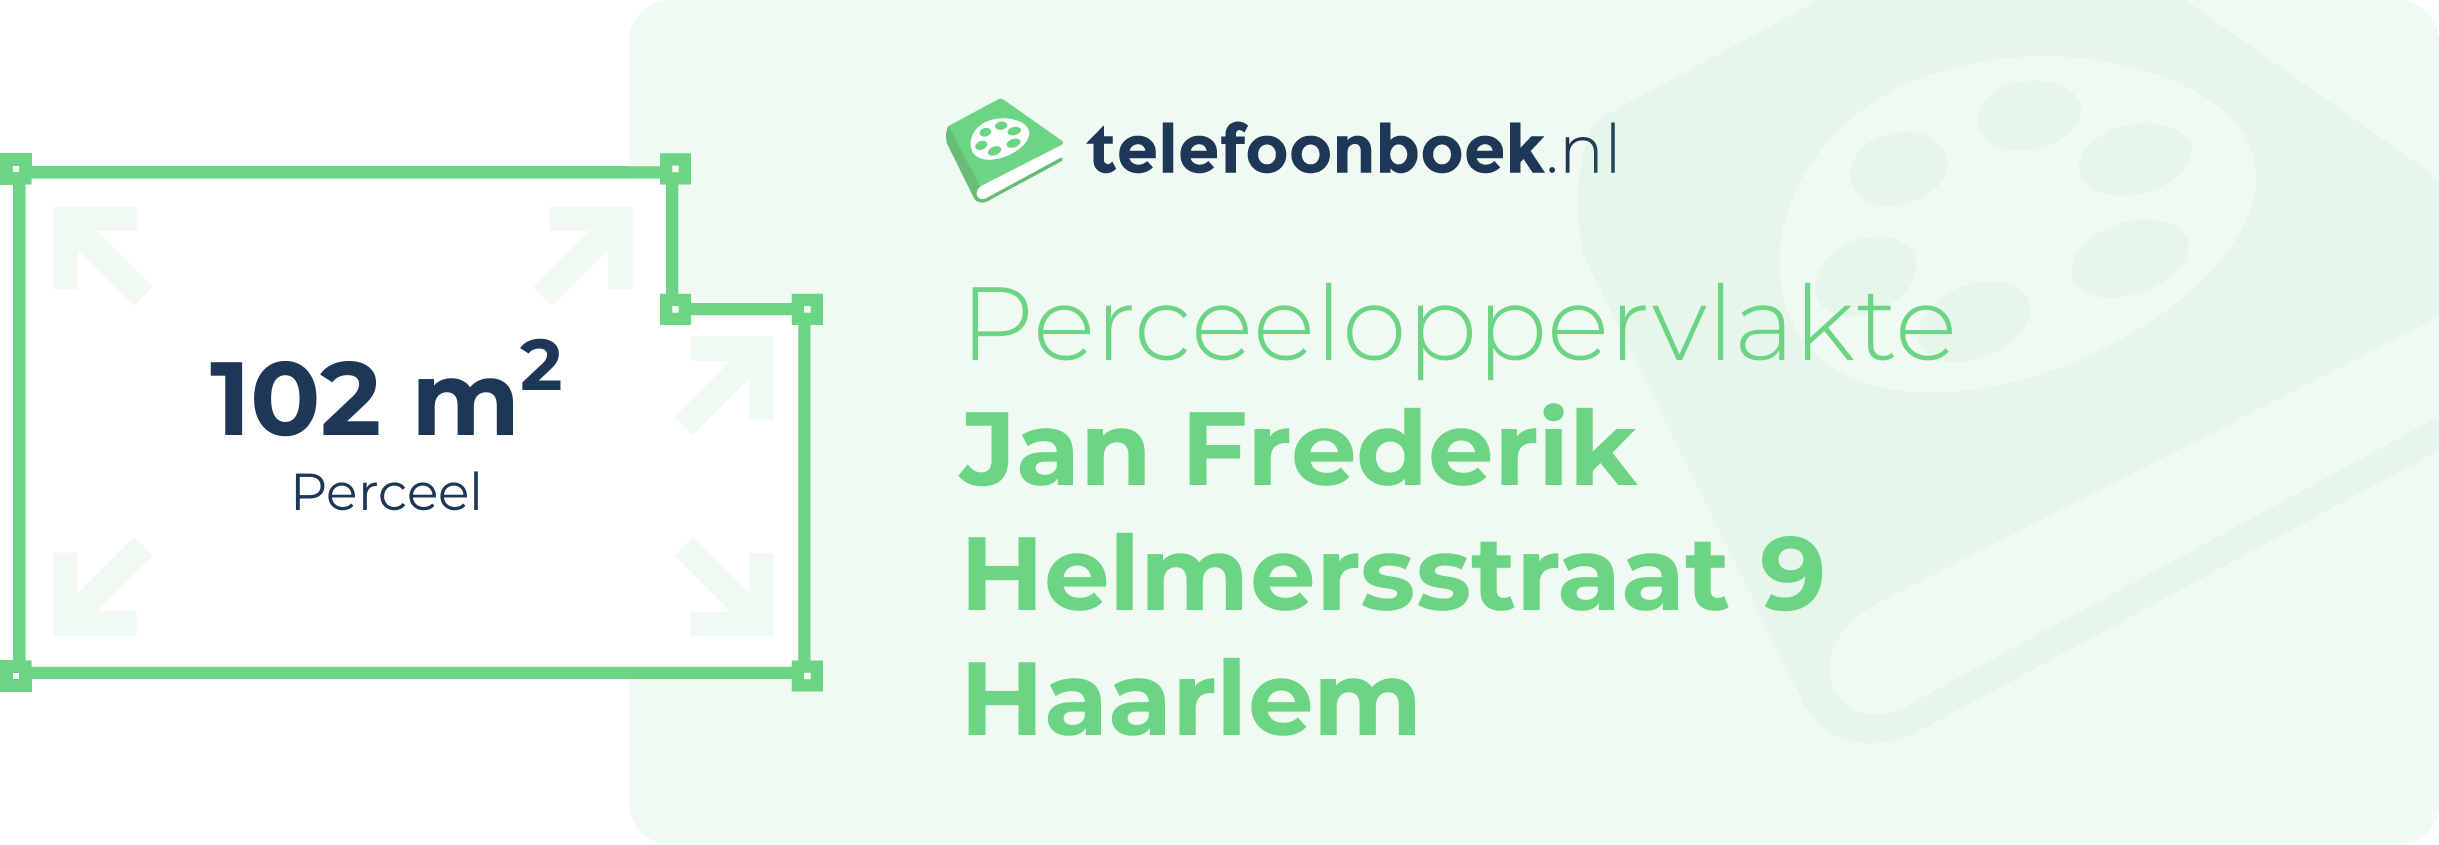 Perceeloppervlakte Jan Frederik Helmersstraat 9 Haarlem